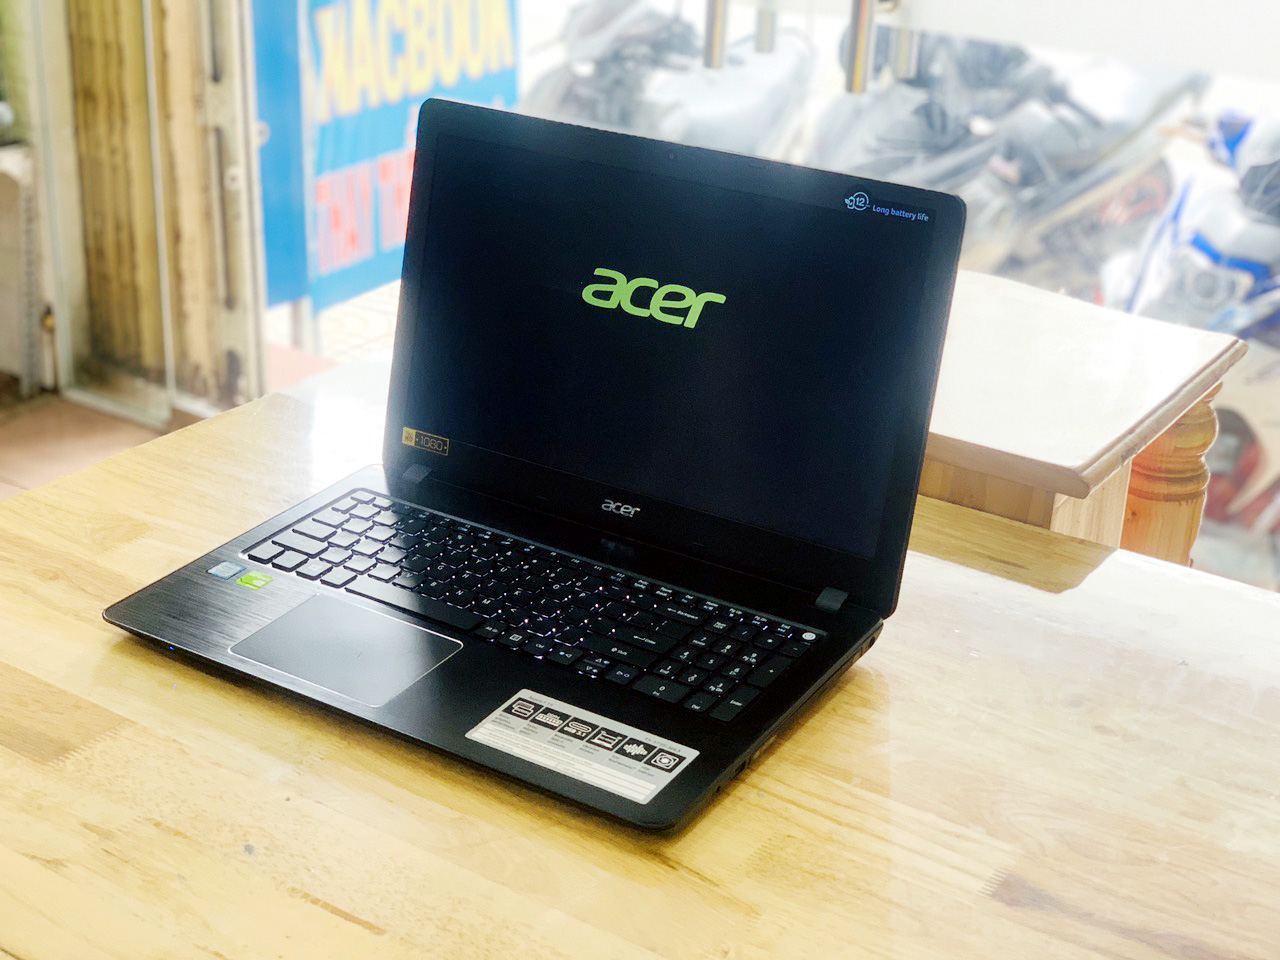 Laptop Acer Aspire F5-573G i5-7200U Ram 4G SSD 128G+HDD 500G Vga Rời Nvidia 940MX 15.6 inch Full HD Mỏng Đẹp